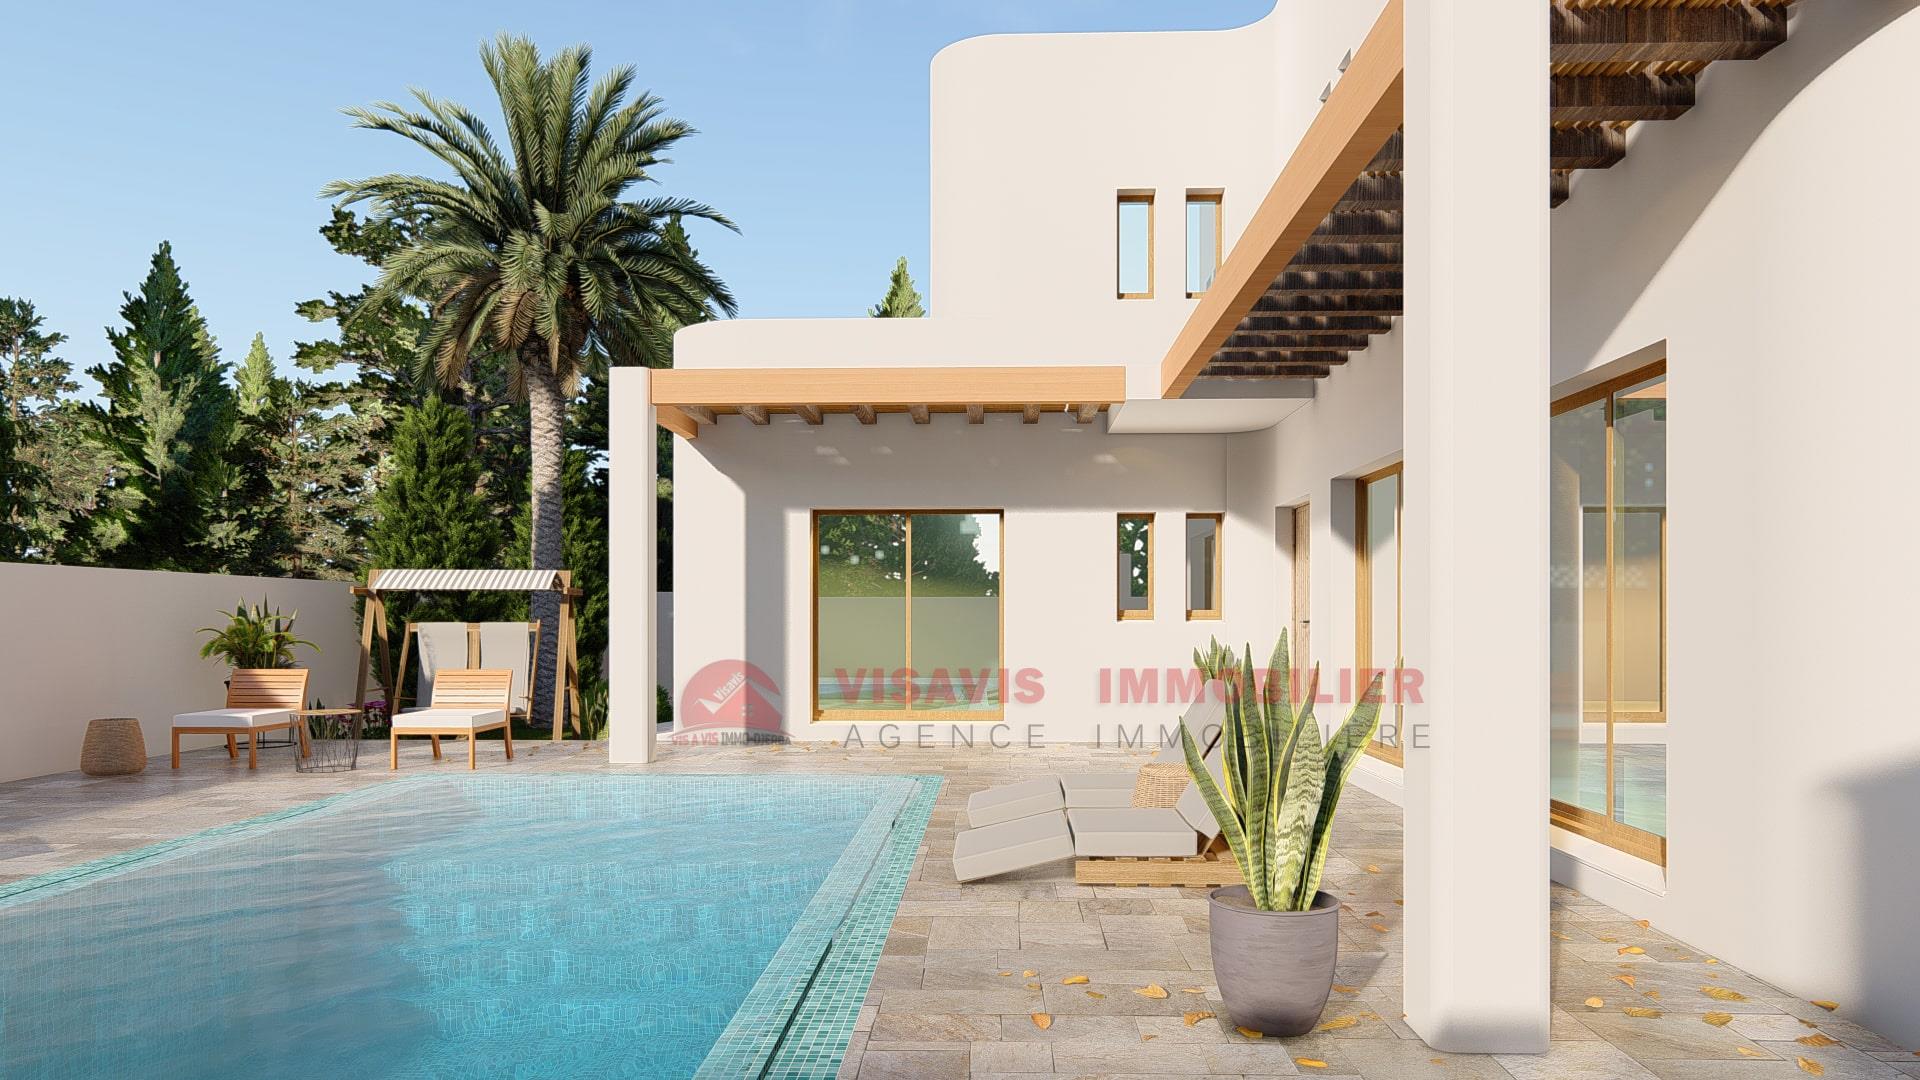 Ny villa til salgs i Djerba - byområde - blå tittel